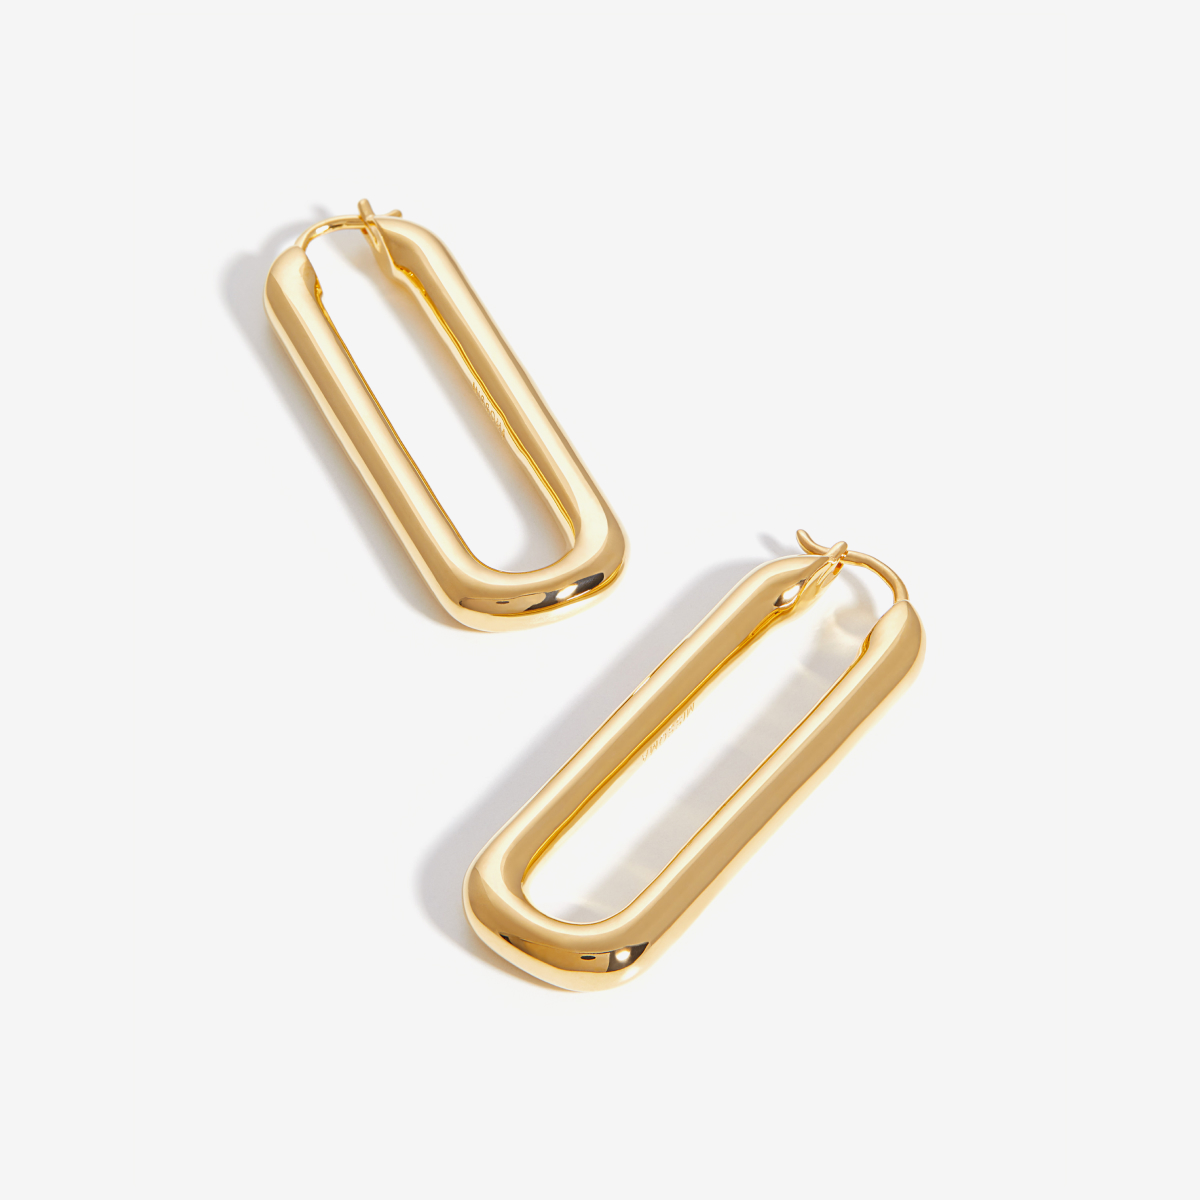 Gold Ovate Hoops – Creolen – 18k vergoldet